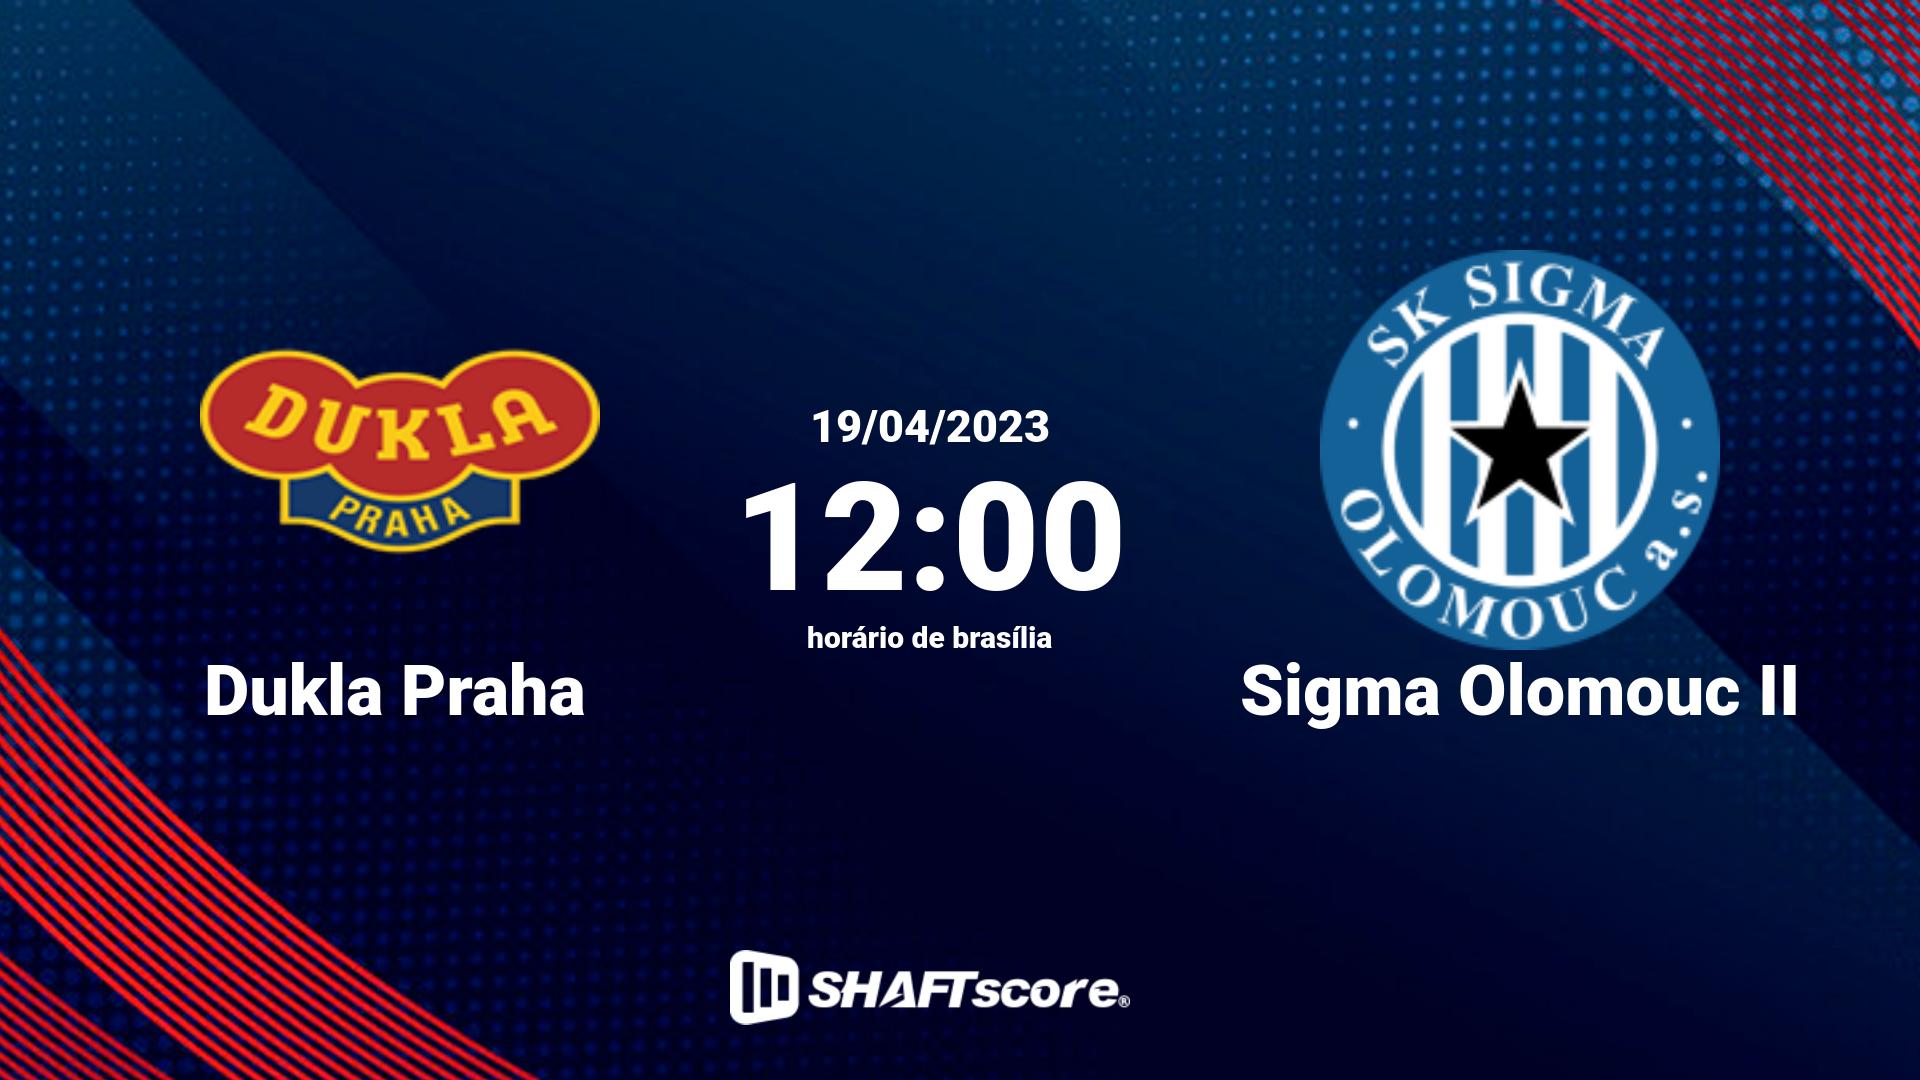 Estatísticas do jogo Dukla Praha vs Sigma Olomouc II 19.04 12:00